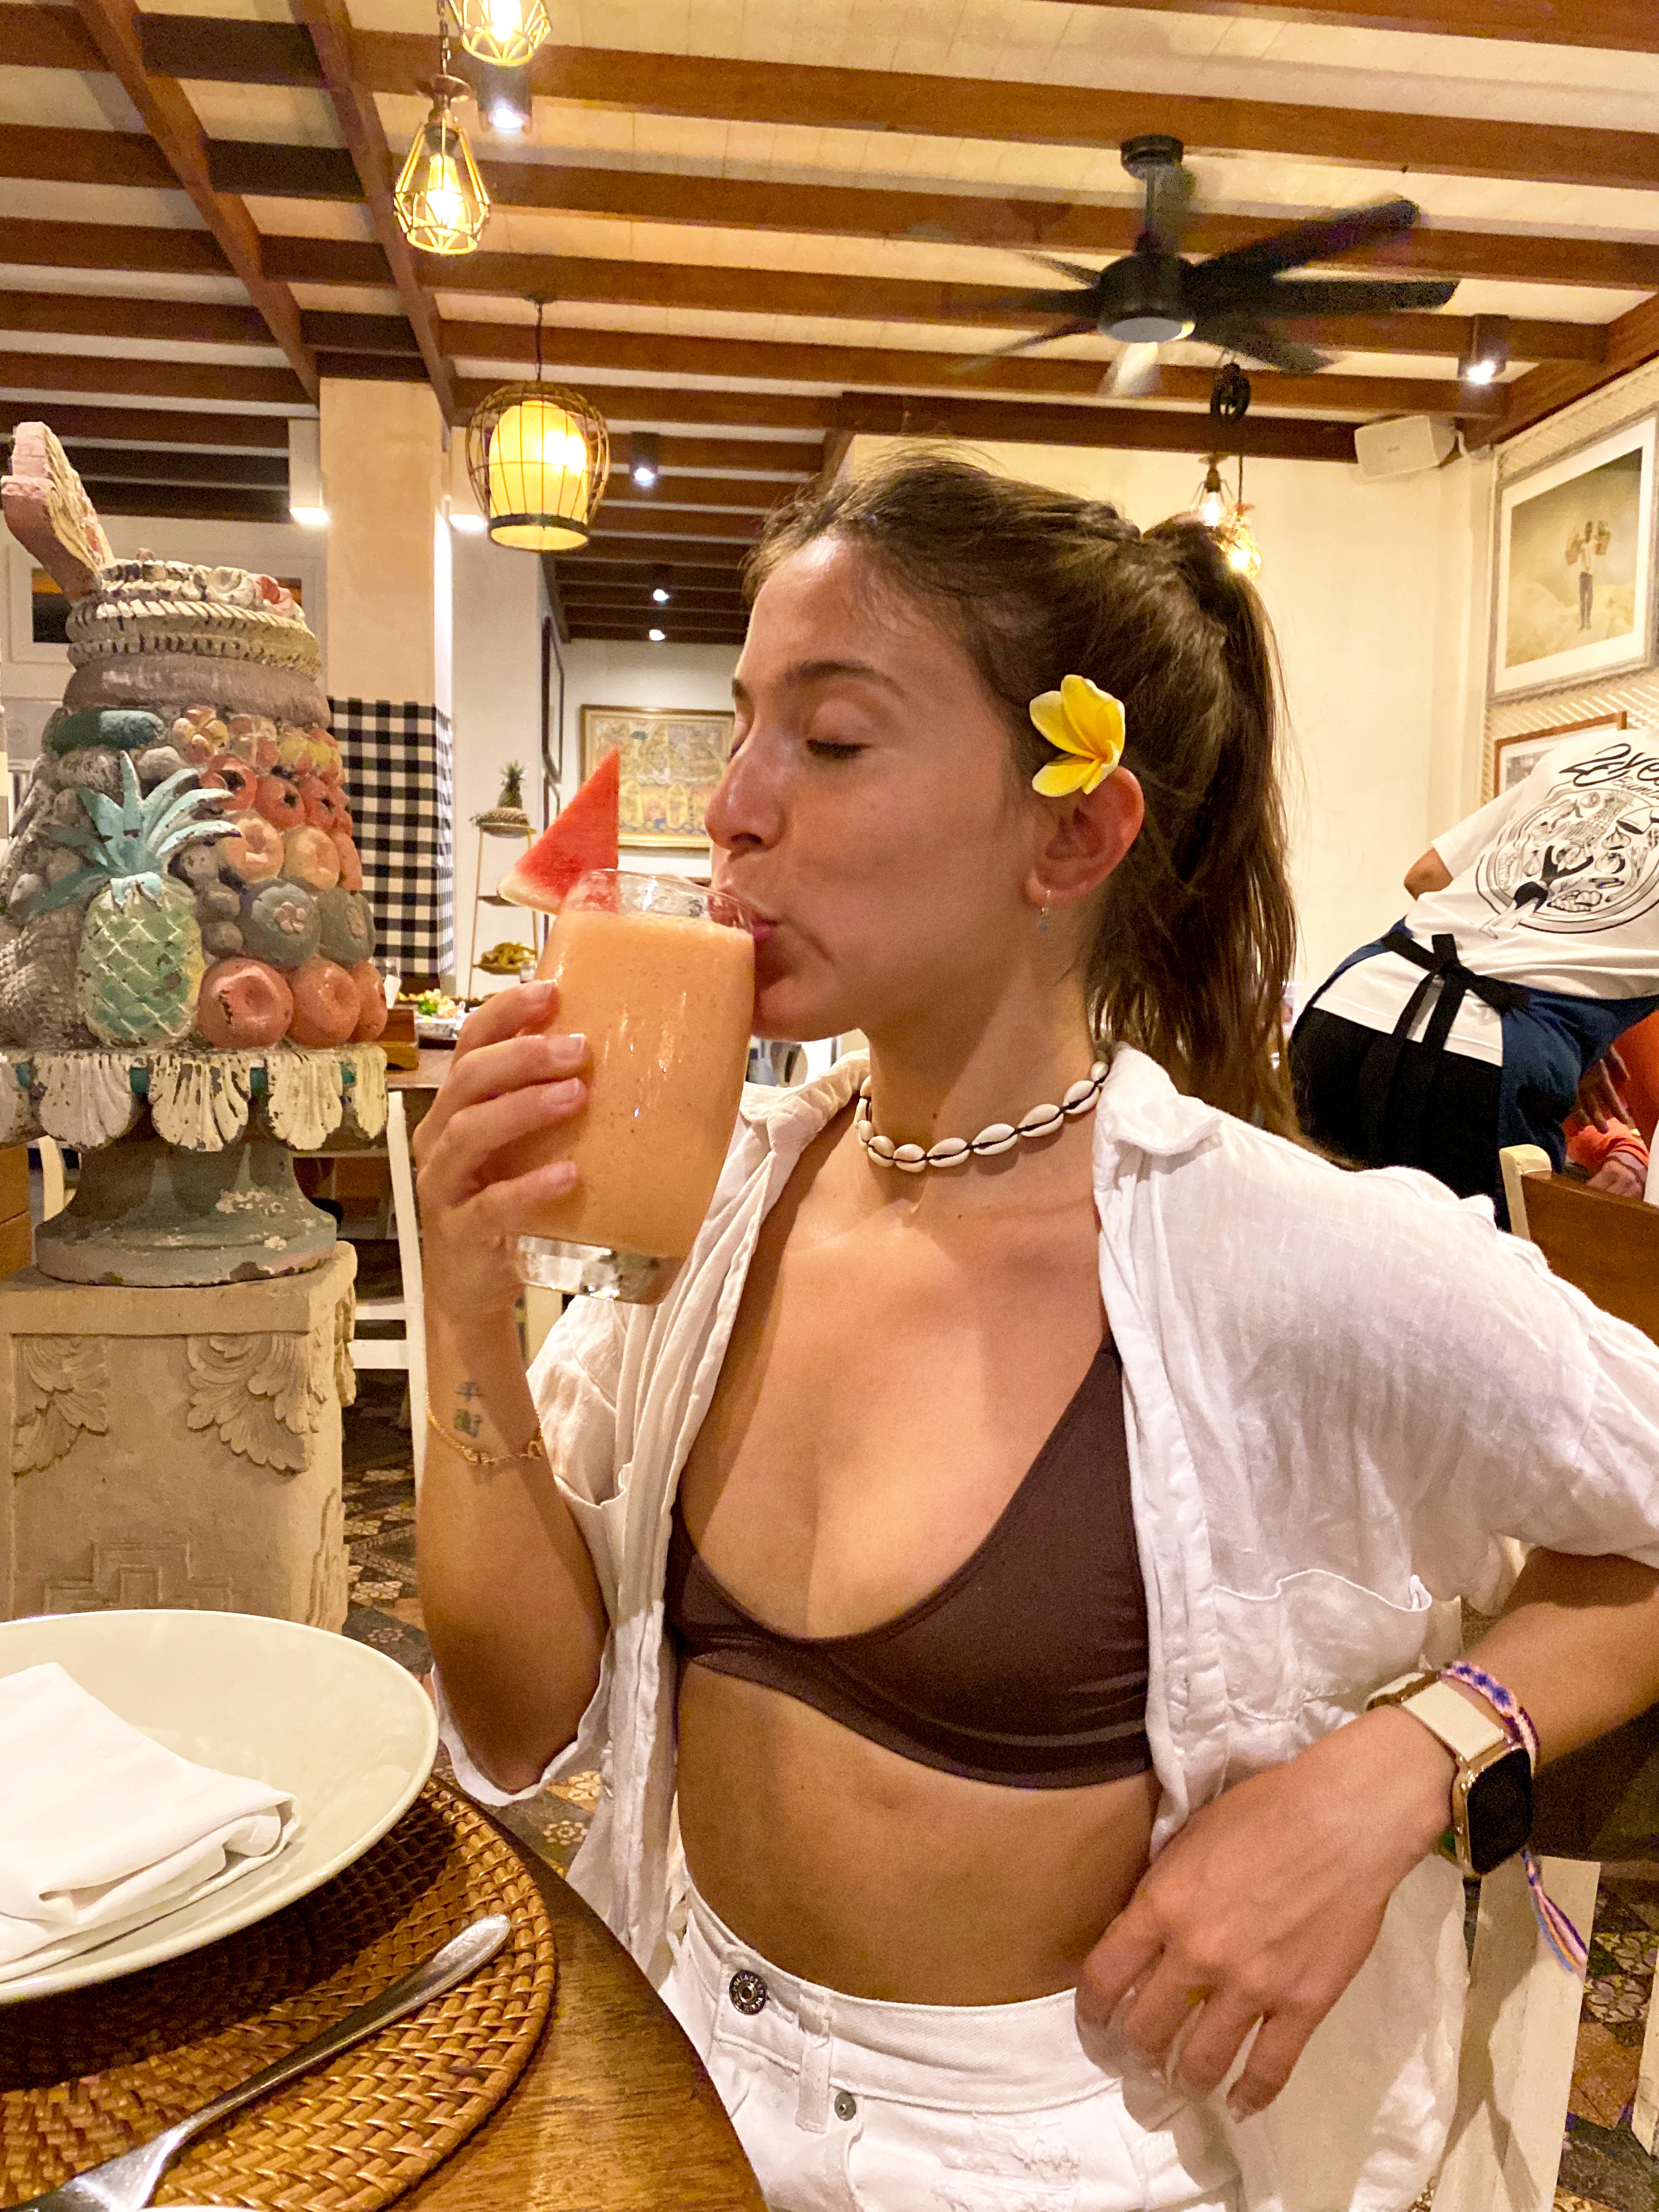 La joven portuguesa toma un zumo en un restaurante de Bali.